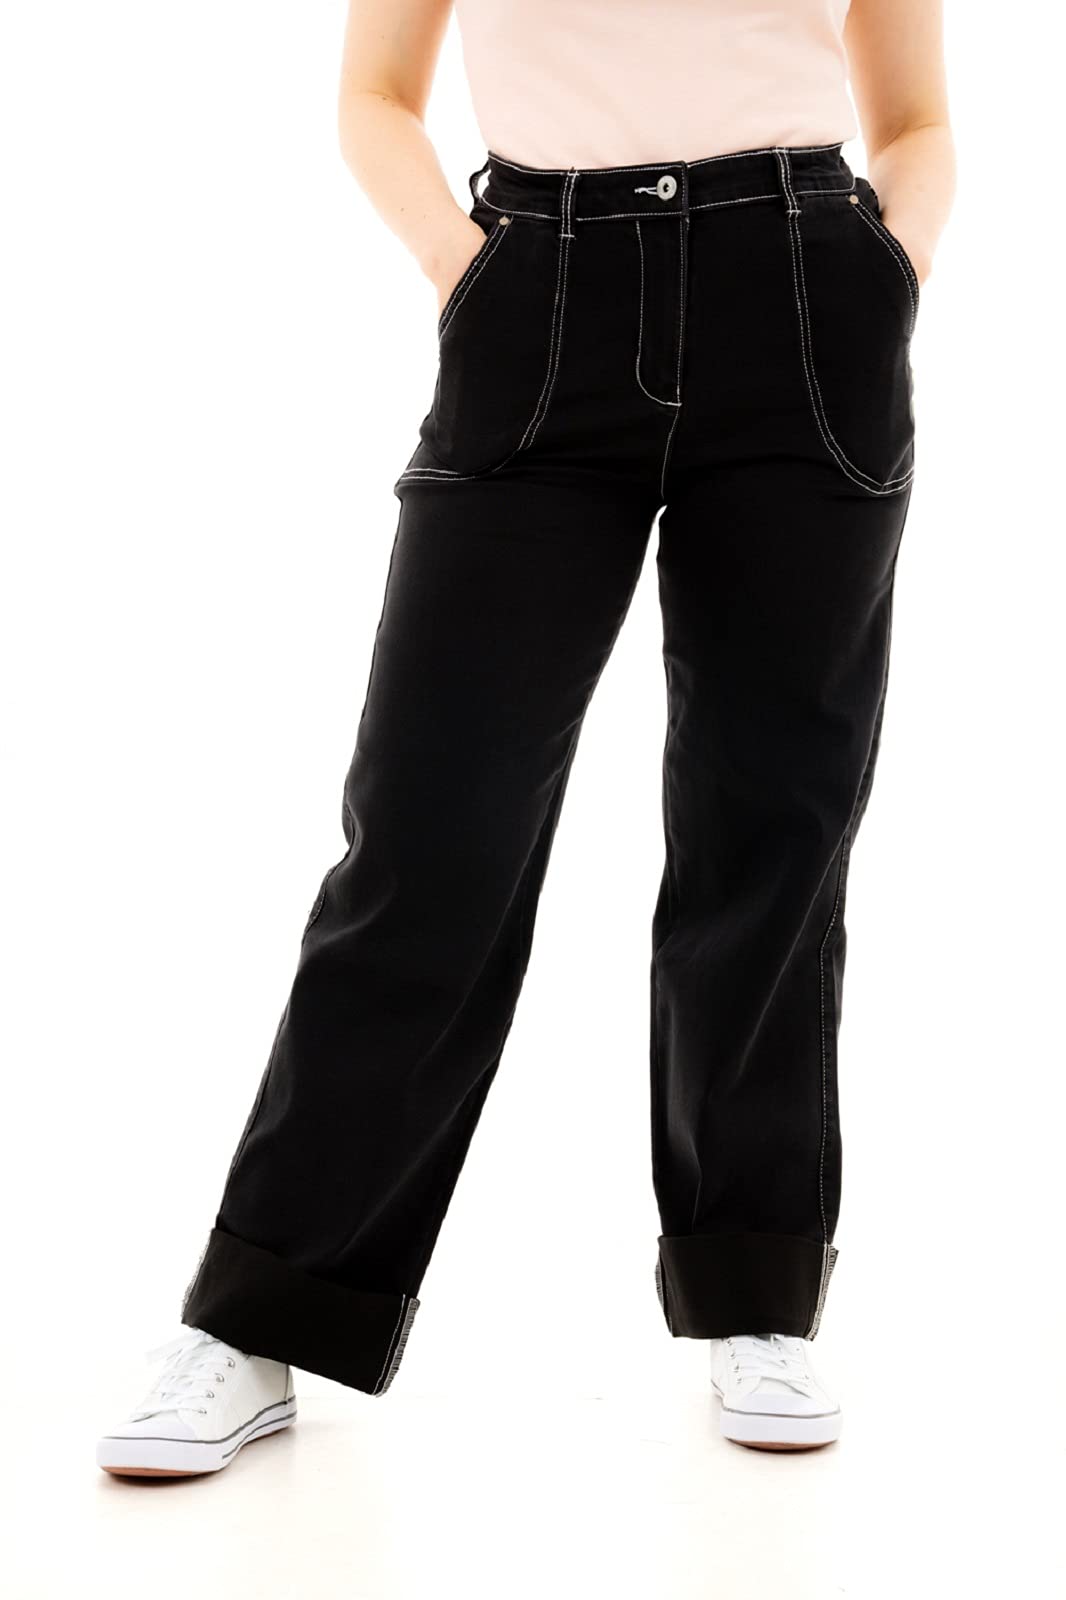 Ro Rox Thelma Retro Vintage Jeans Denim Hose im 50er-Jahre-Stil mit Hoher Taille - Schwarz (S)